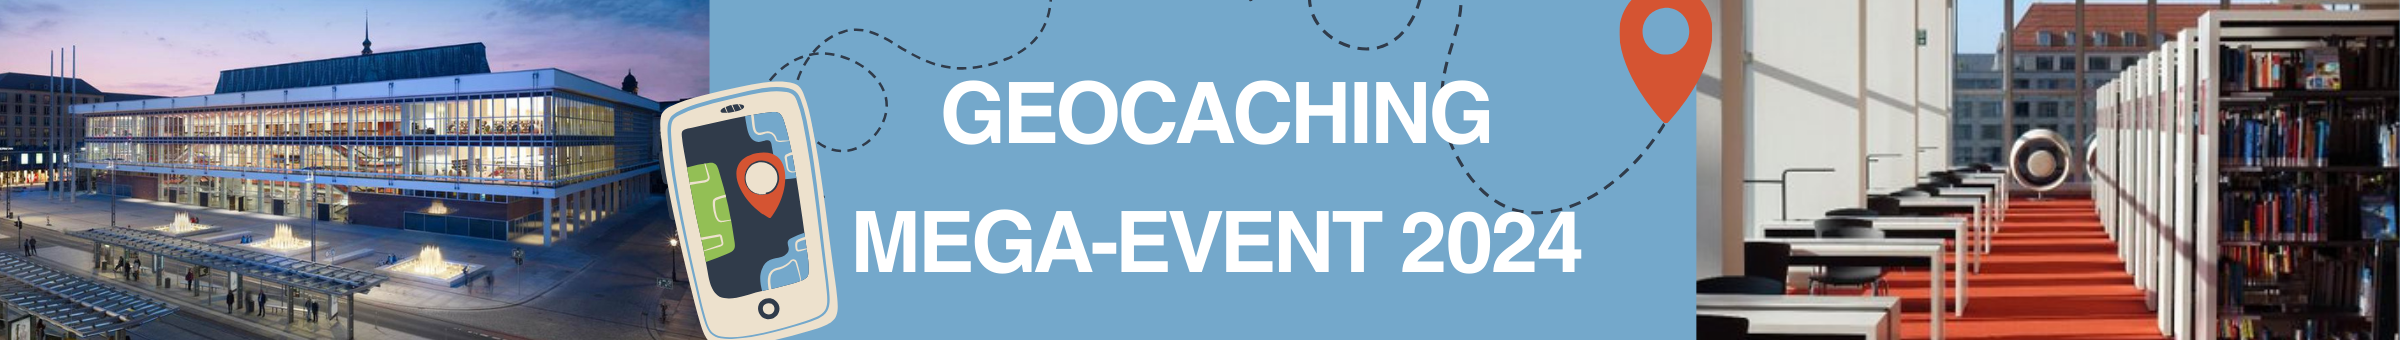 Geocaching Mega-Event 2024